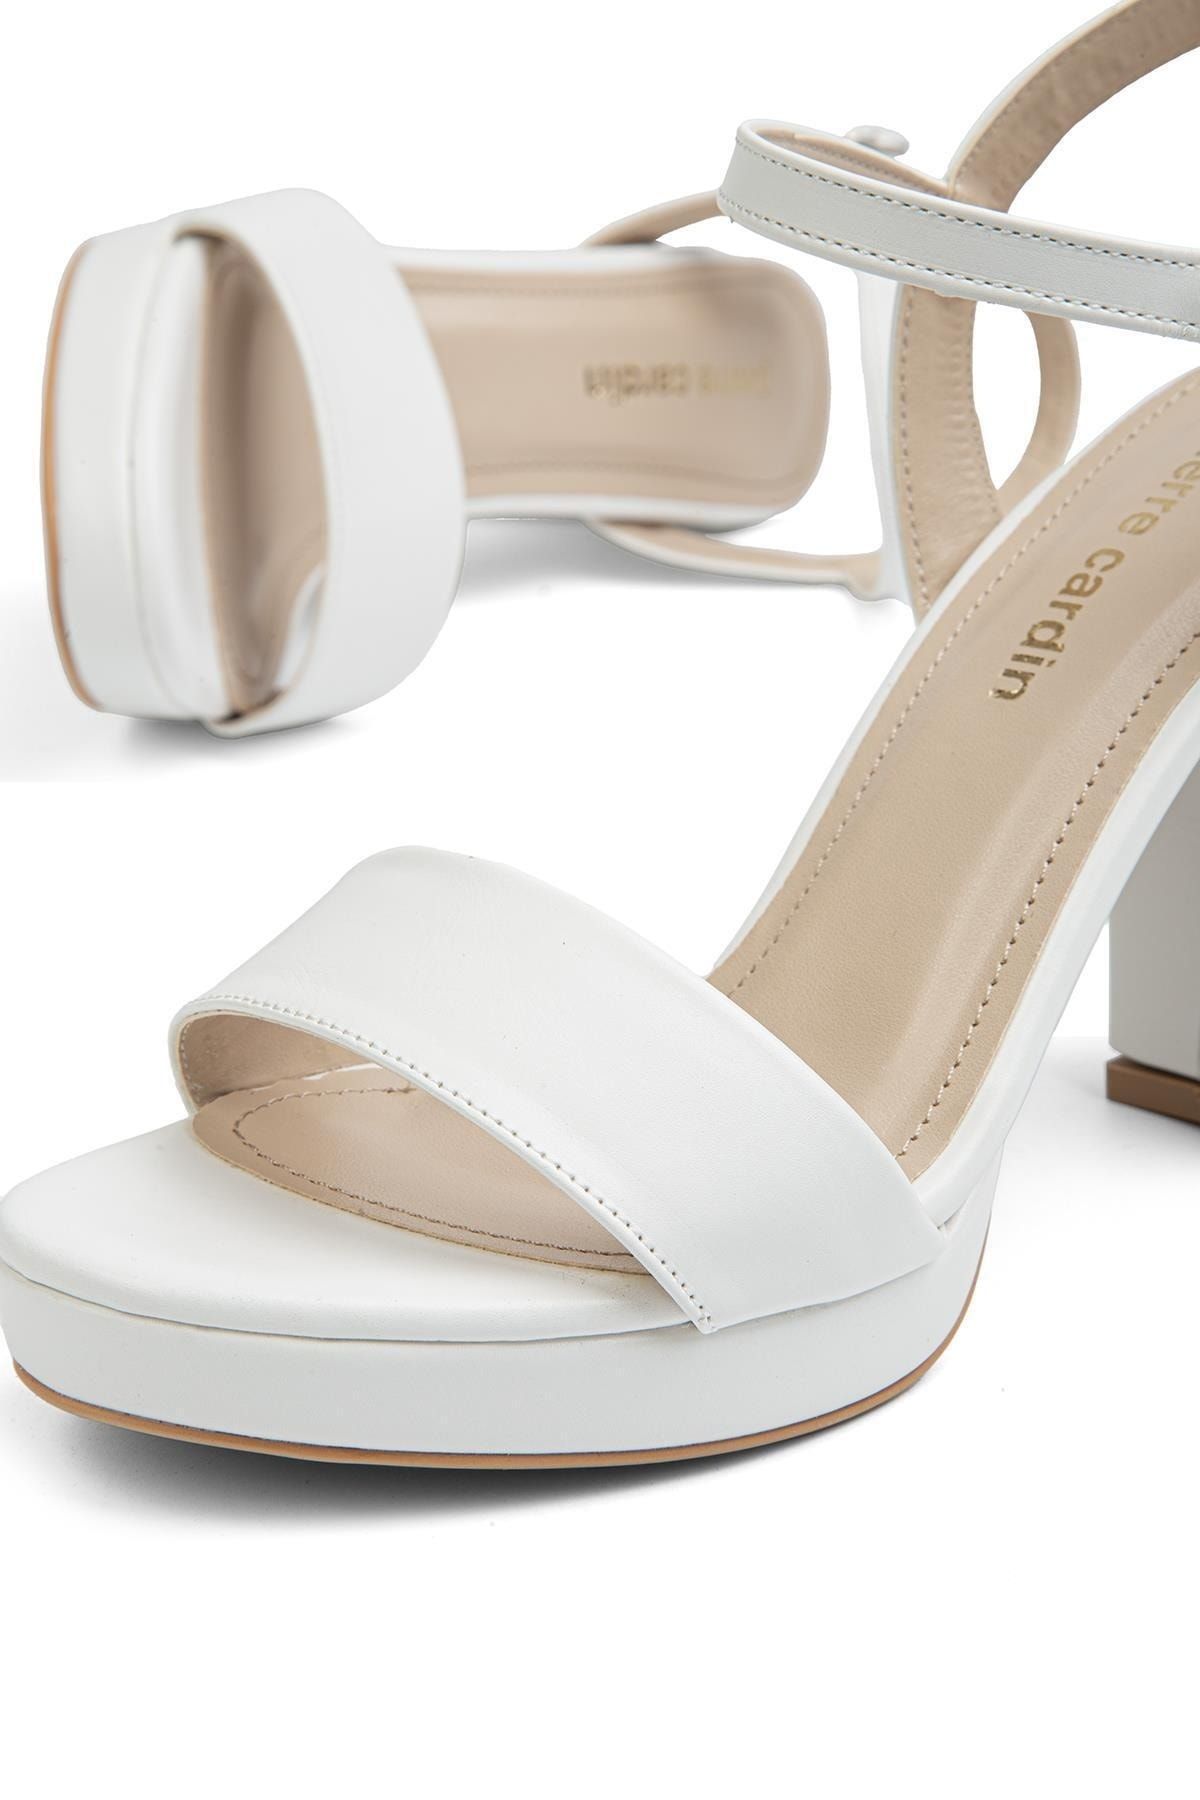 Pierre Cardin ® | PC-52370-3822 Beyaz Cilt - Kadın Topuklu Ayakkabı